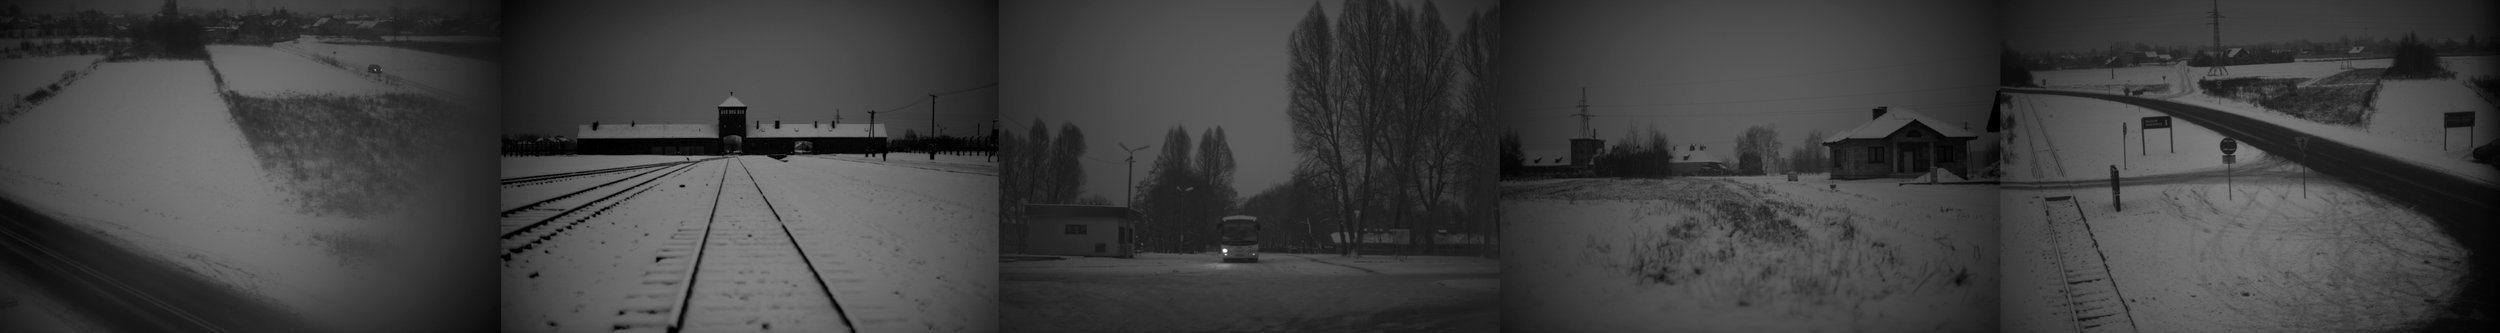 Auschwitz_Montage_04.jpg